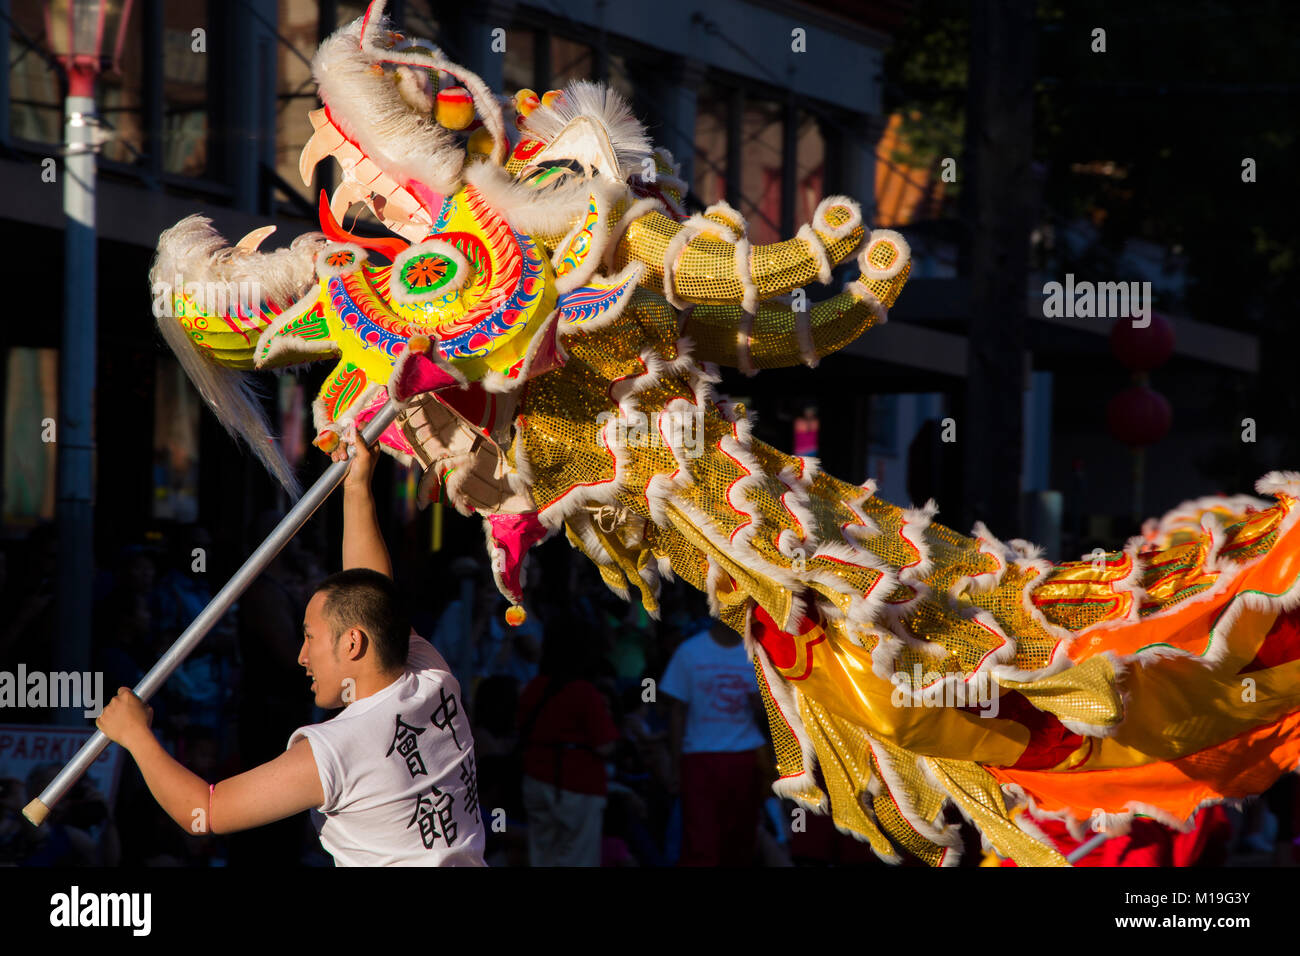 Stati Uniti, Washington, Seattle, Seafair parata nel quartiere internazionale, uomo tenendo in mano la testa del dragone Foto Stock